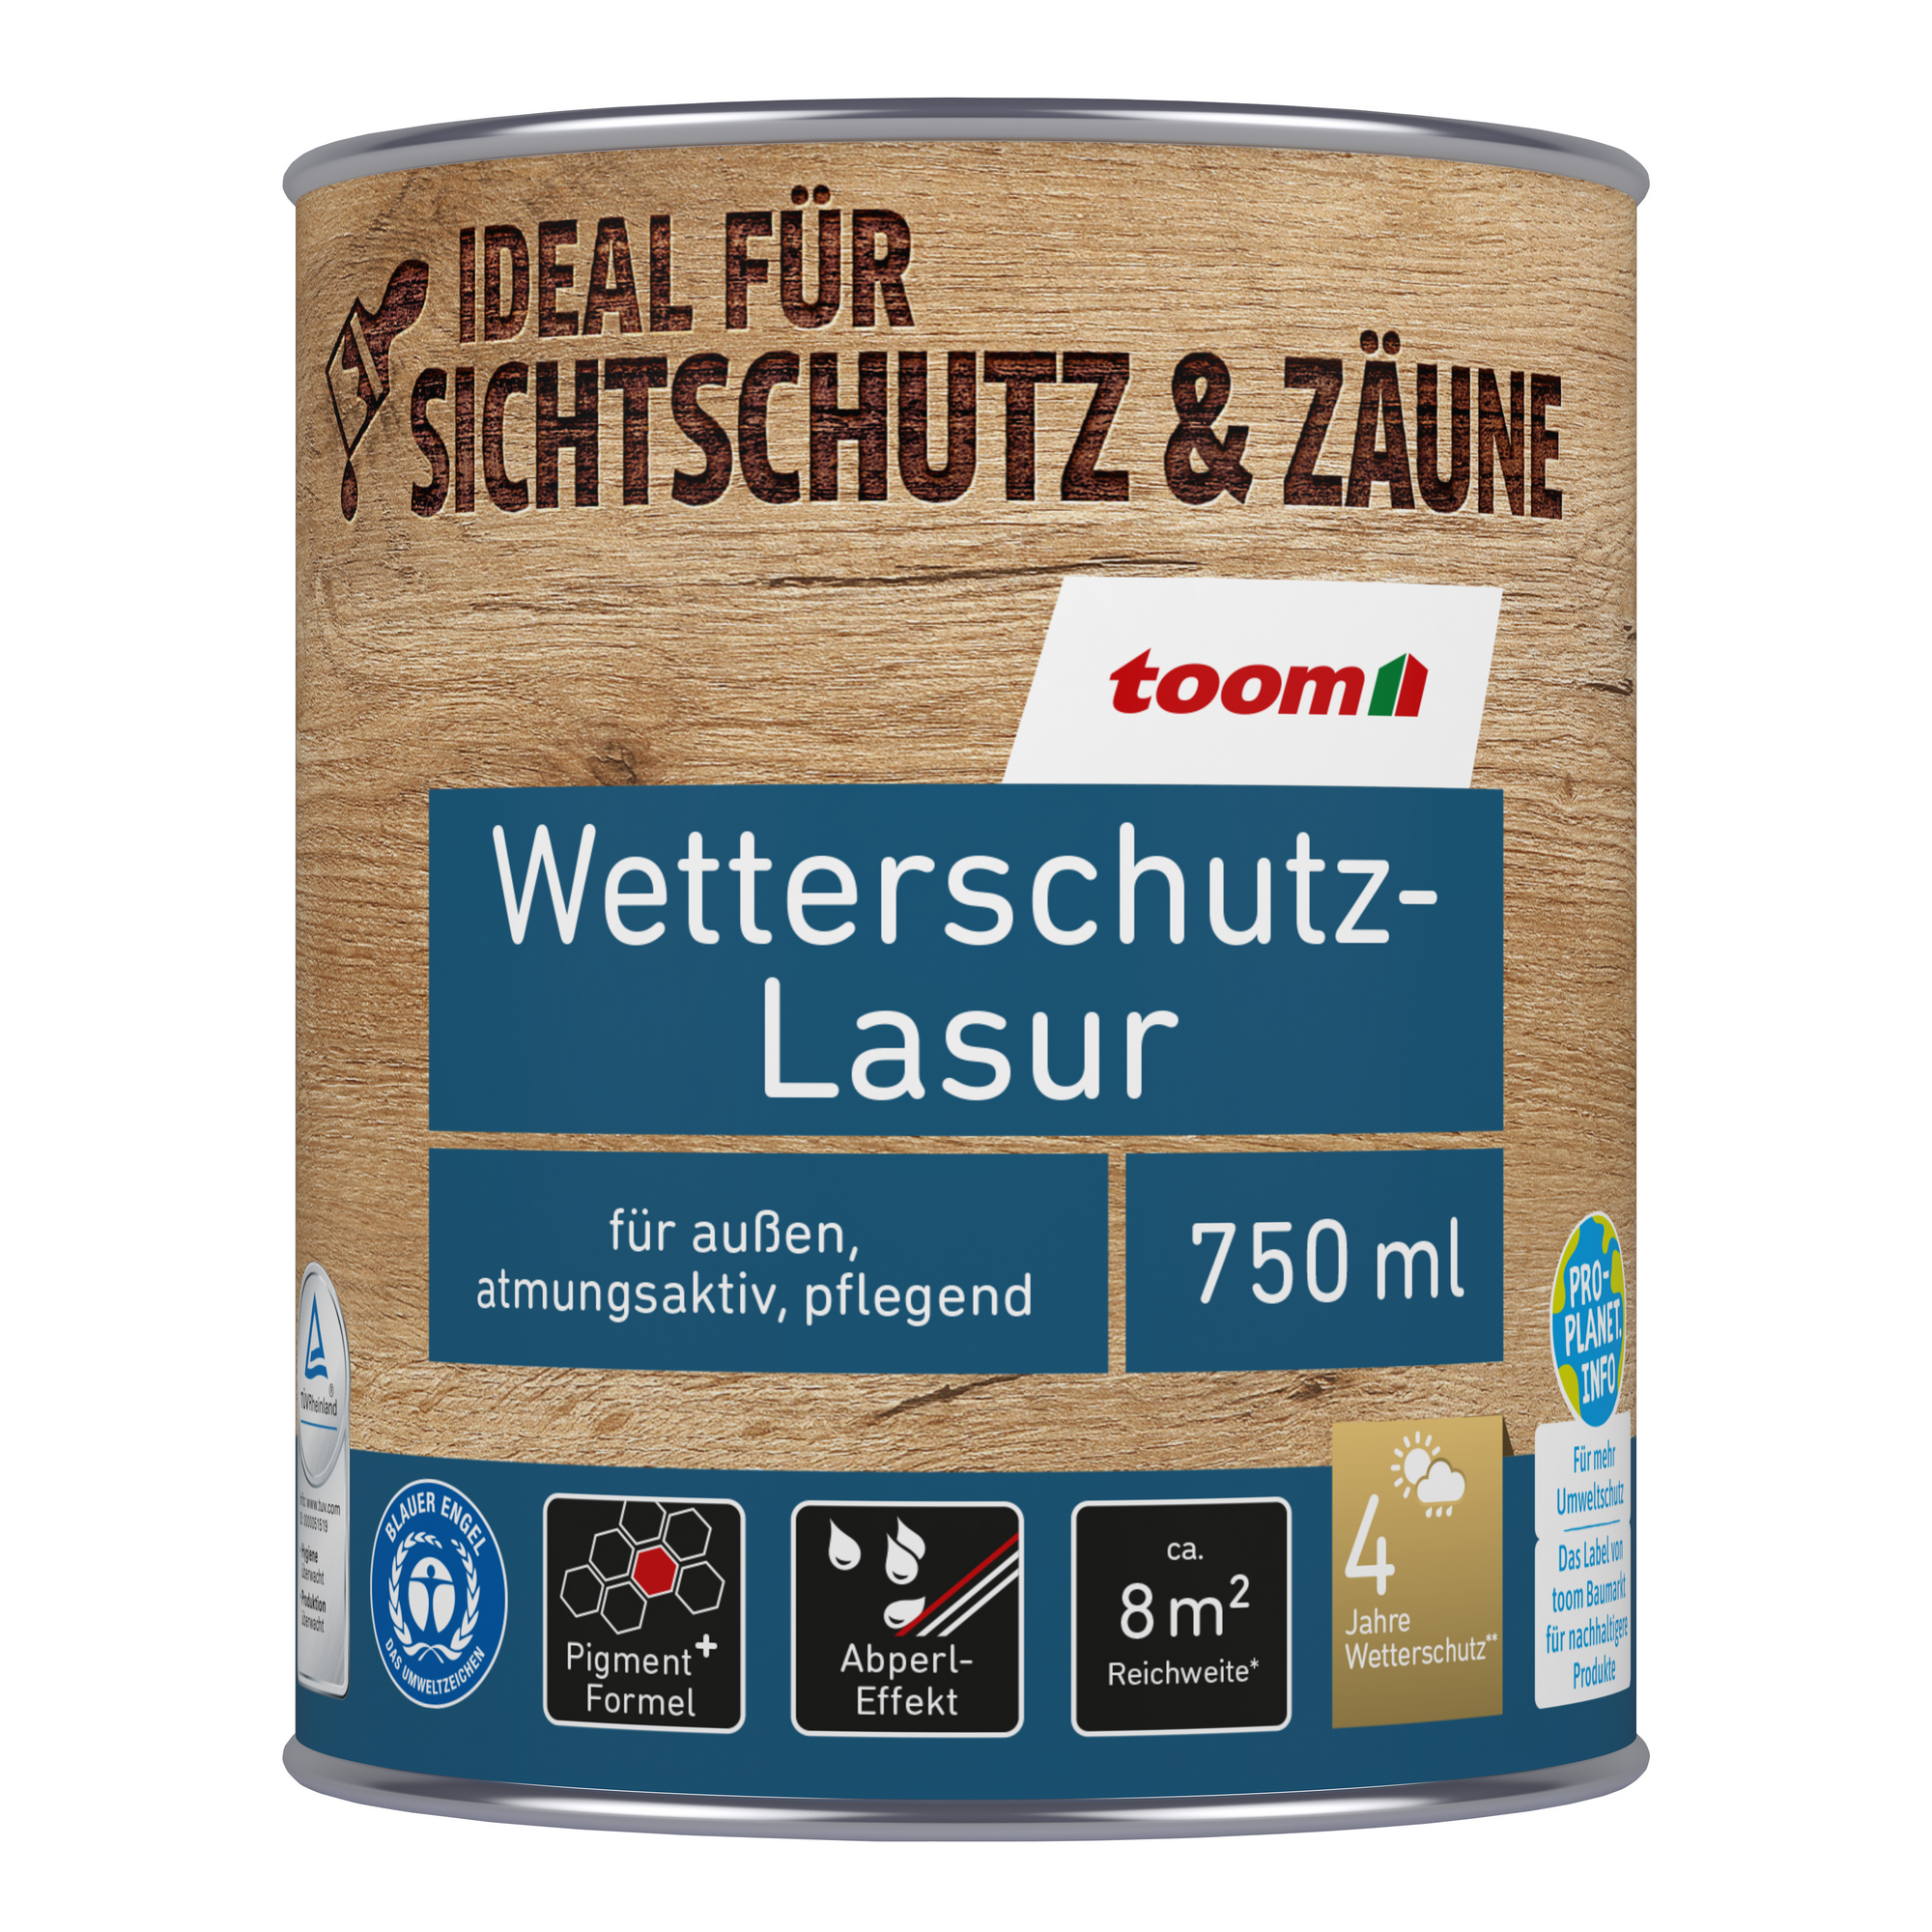 Wetterschutz-Lasur teakfarben 750 ml + product picture